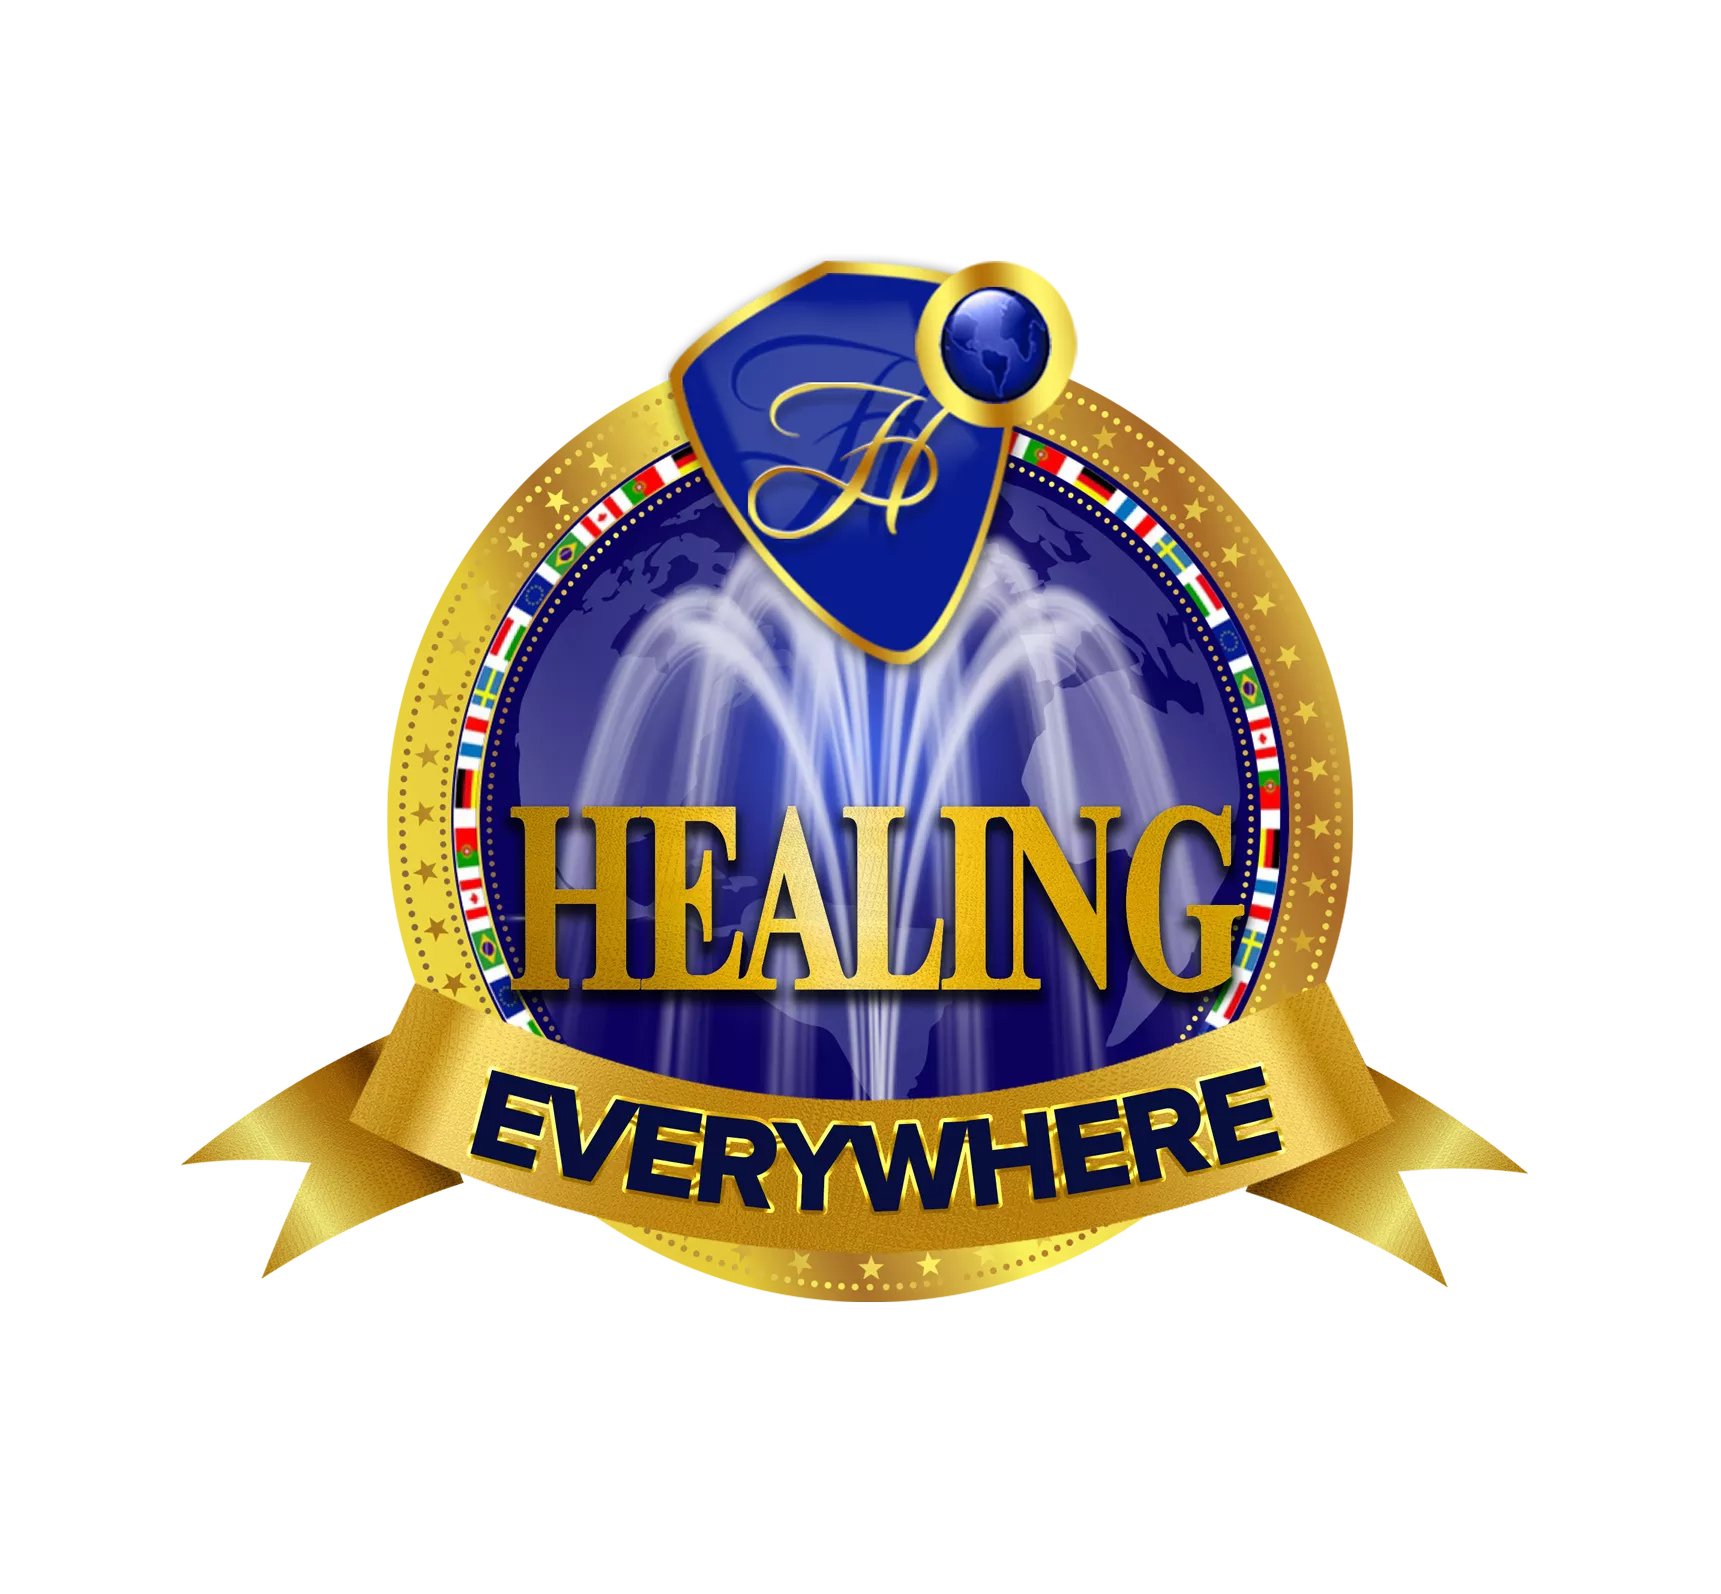 Healing Everywhere